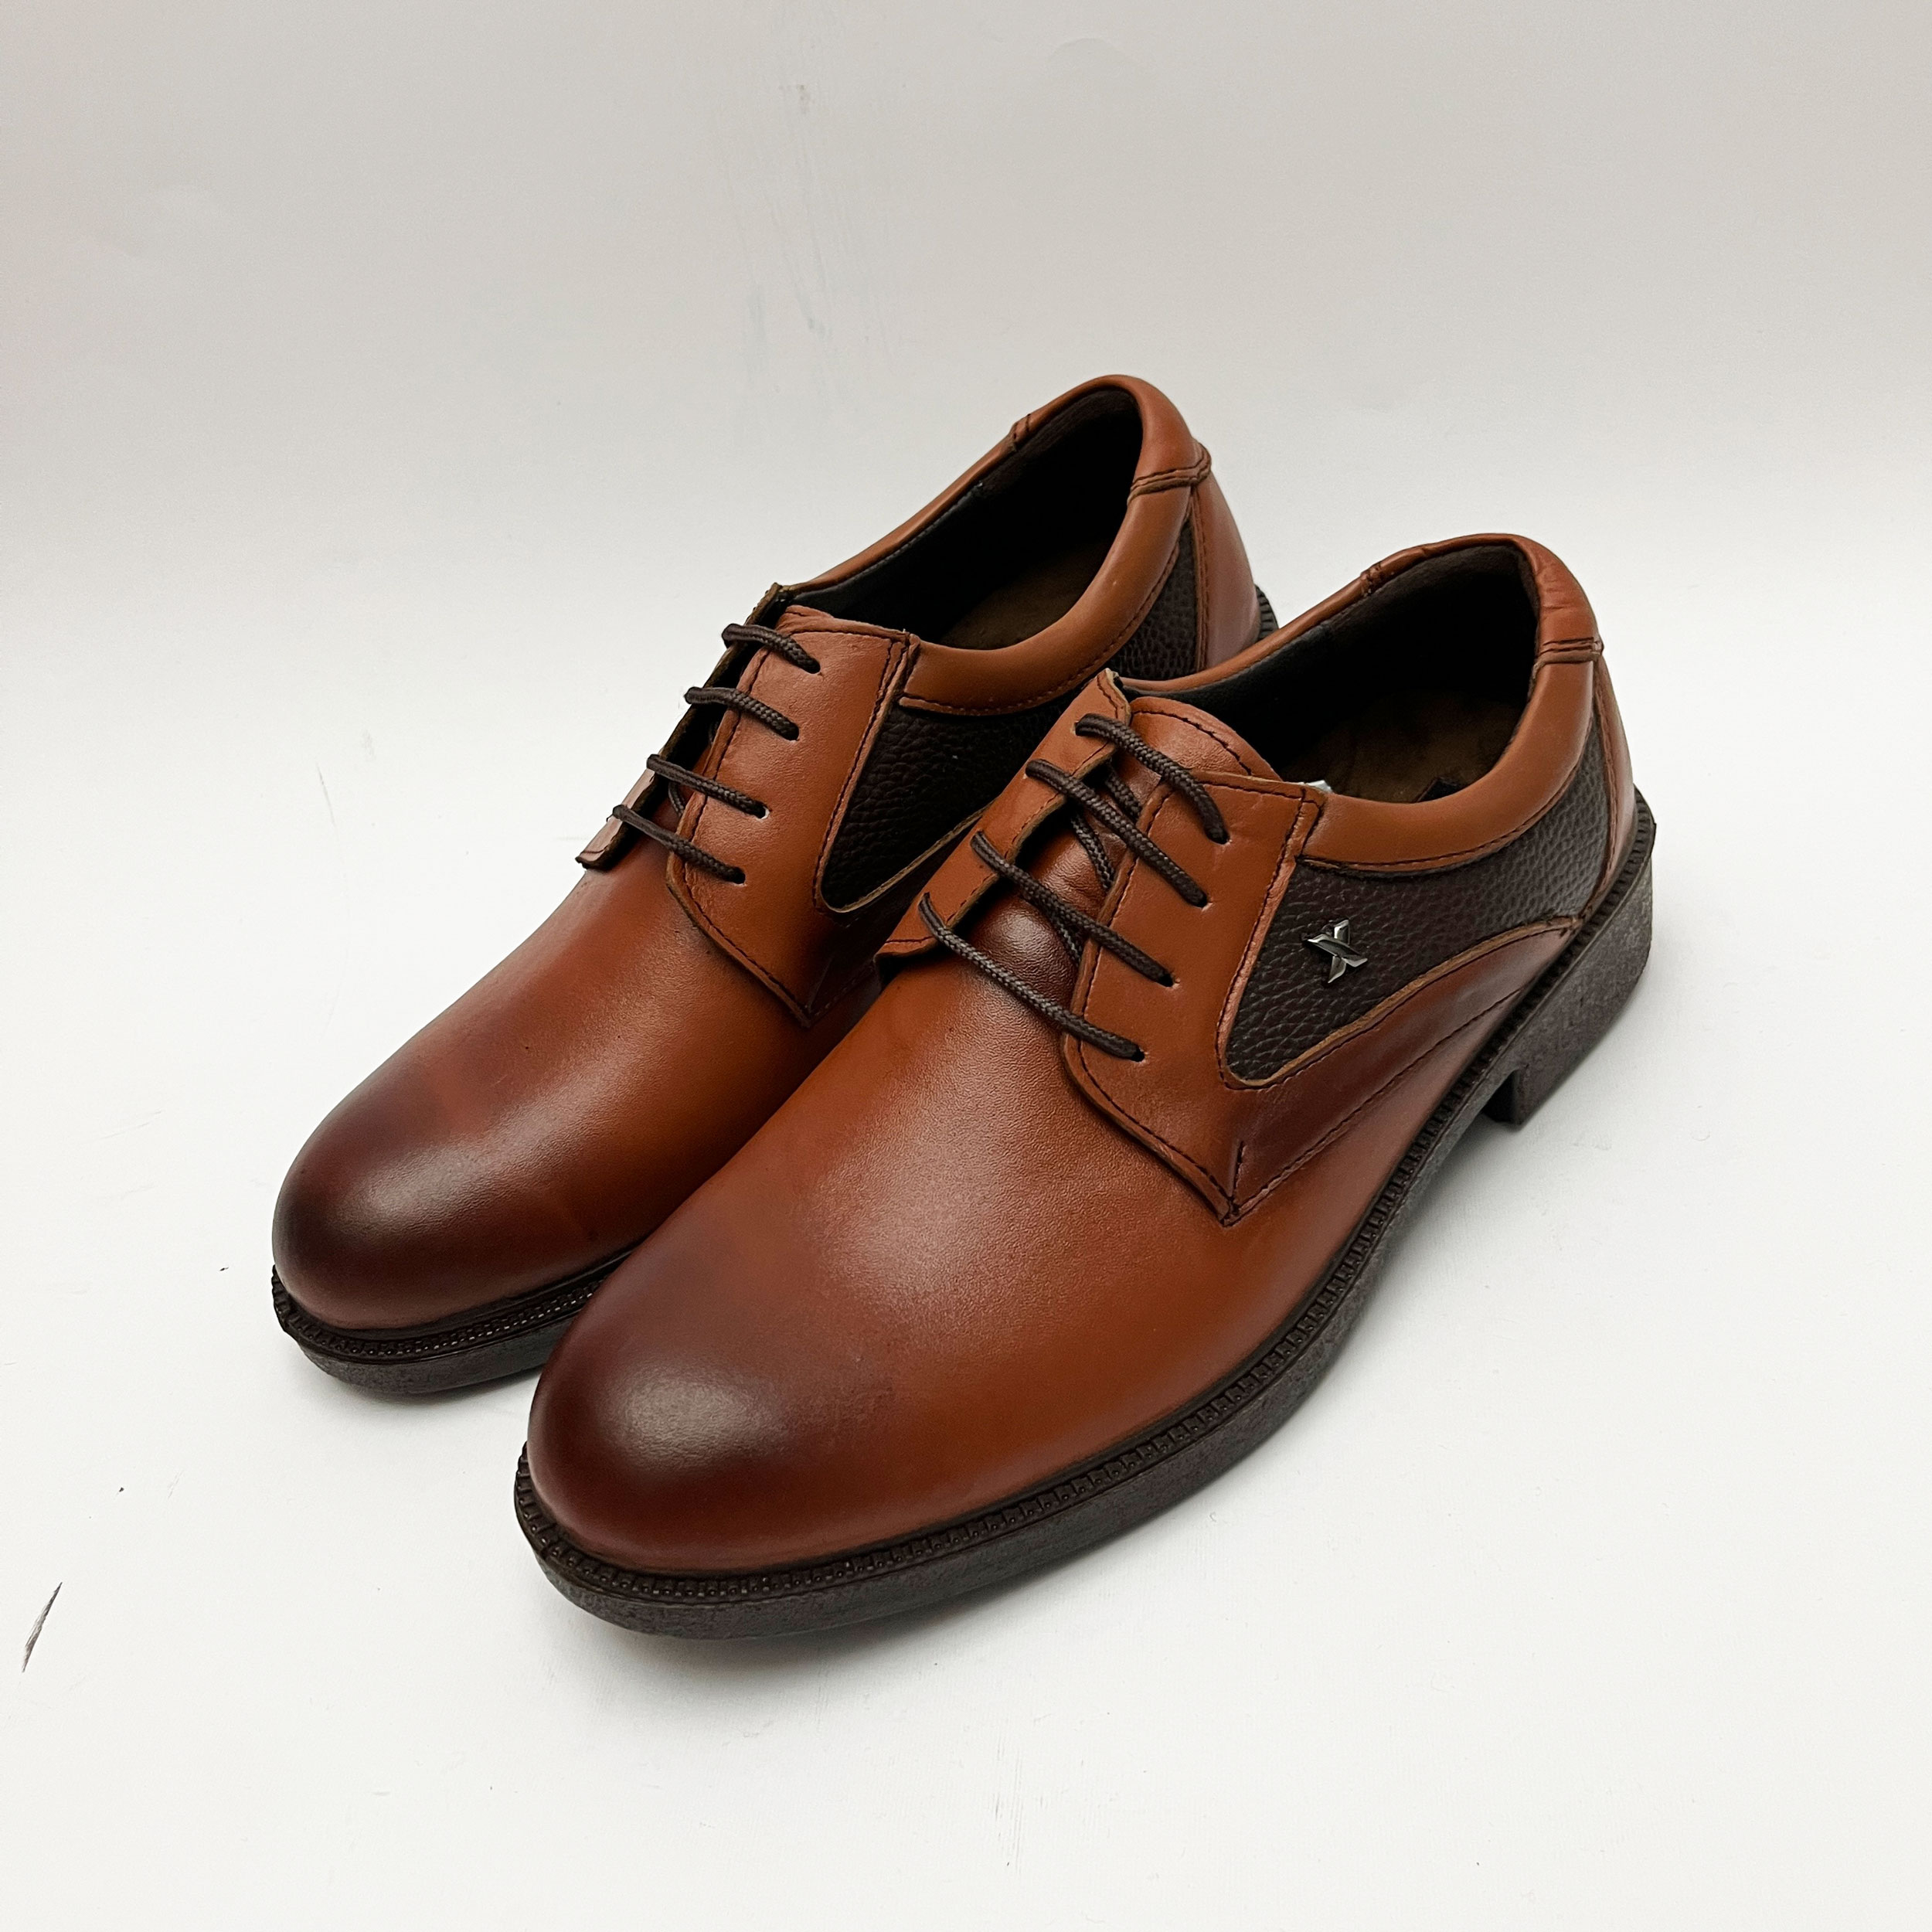 کفش مردانه مدل چرم پوش کد 4054 -  - 2